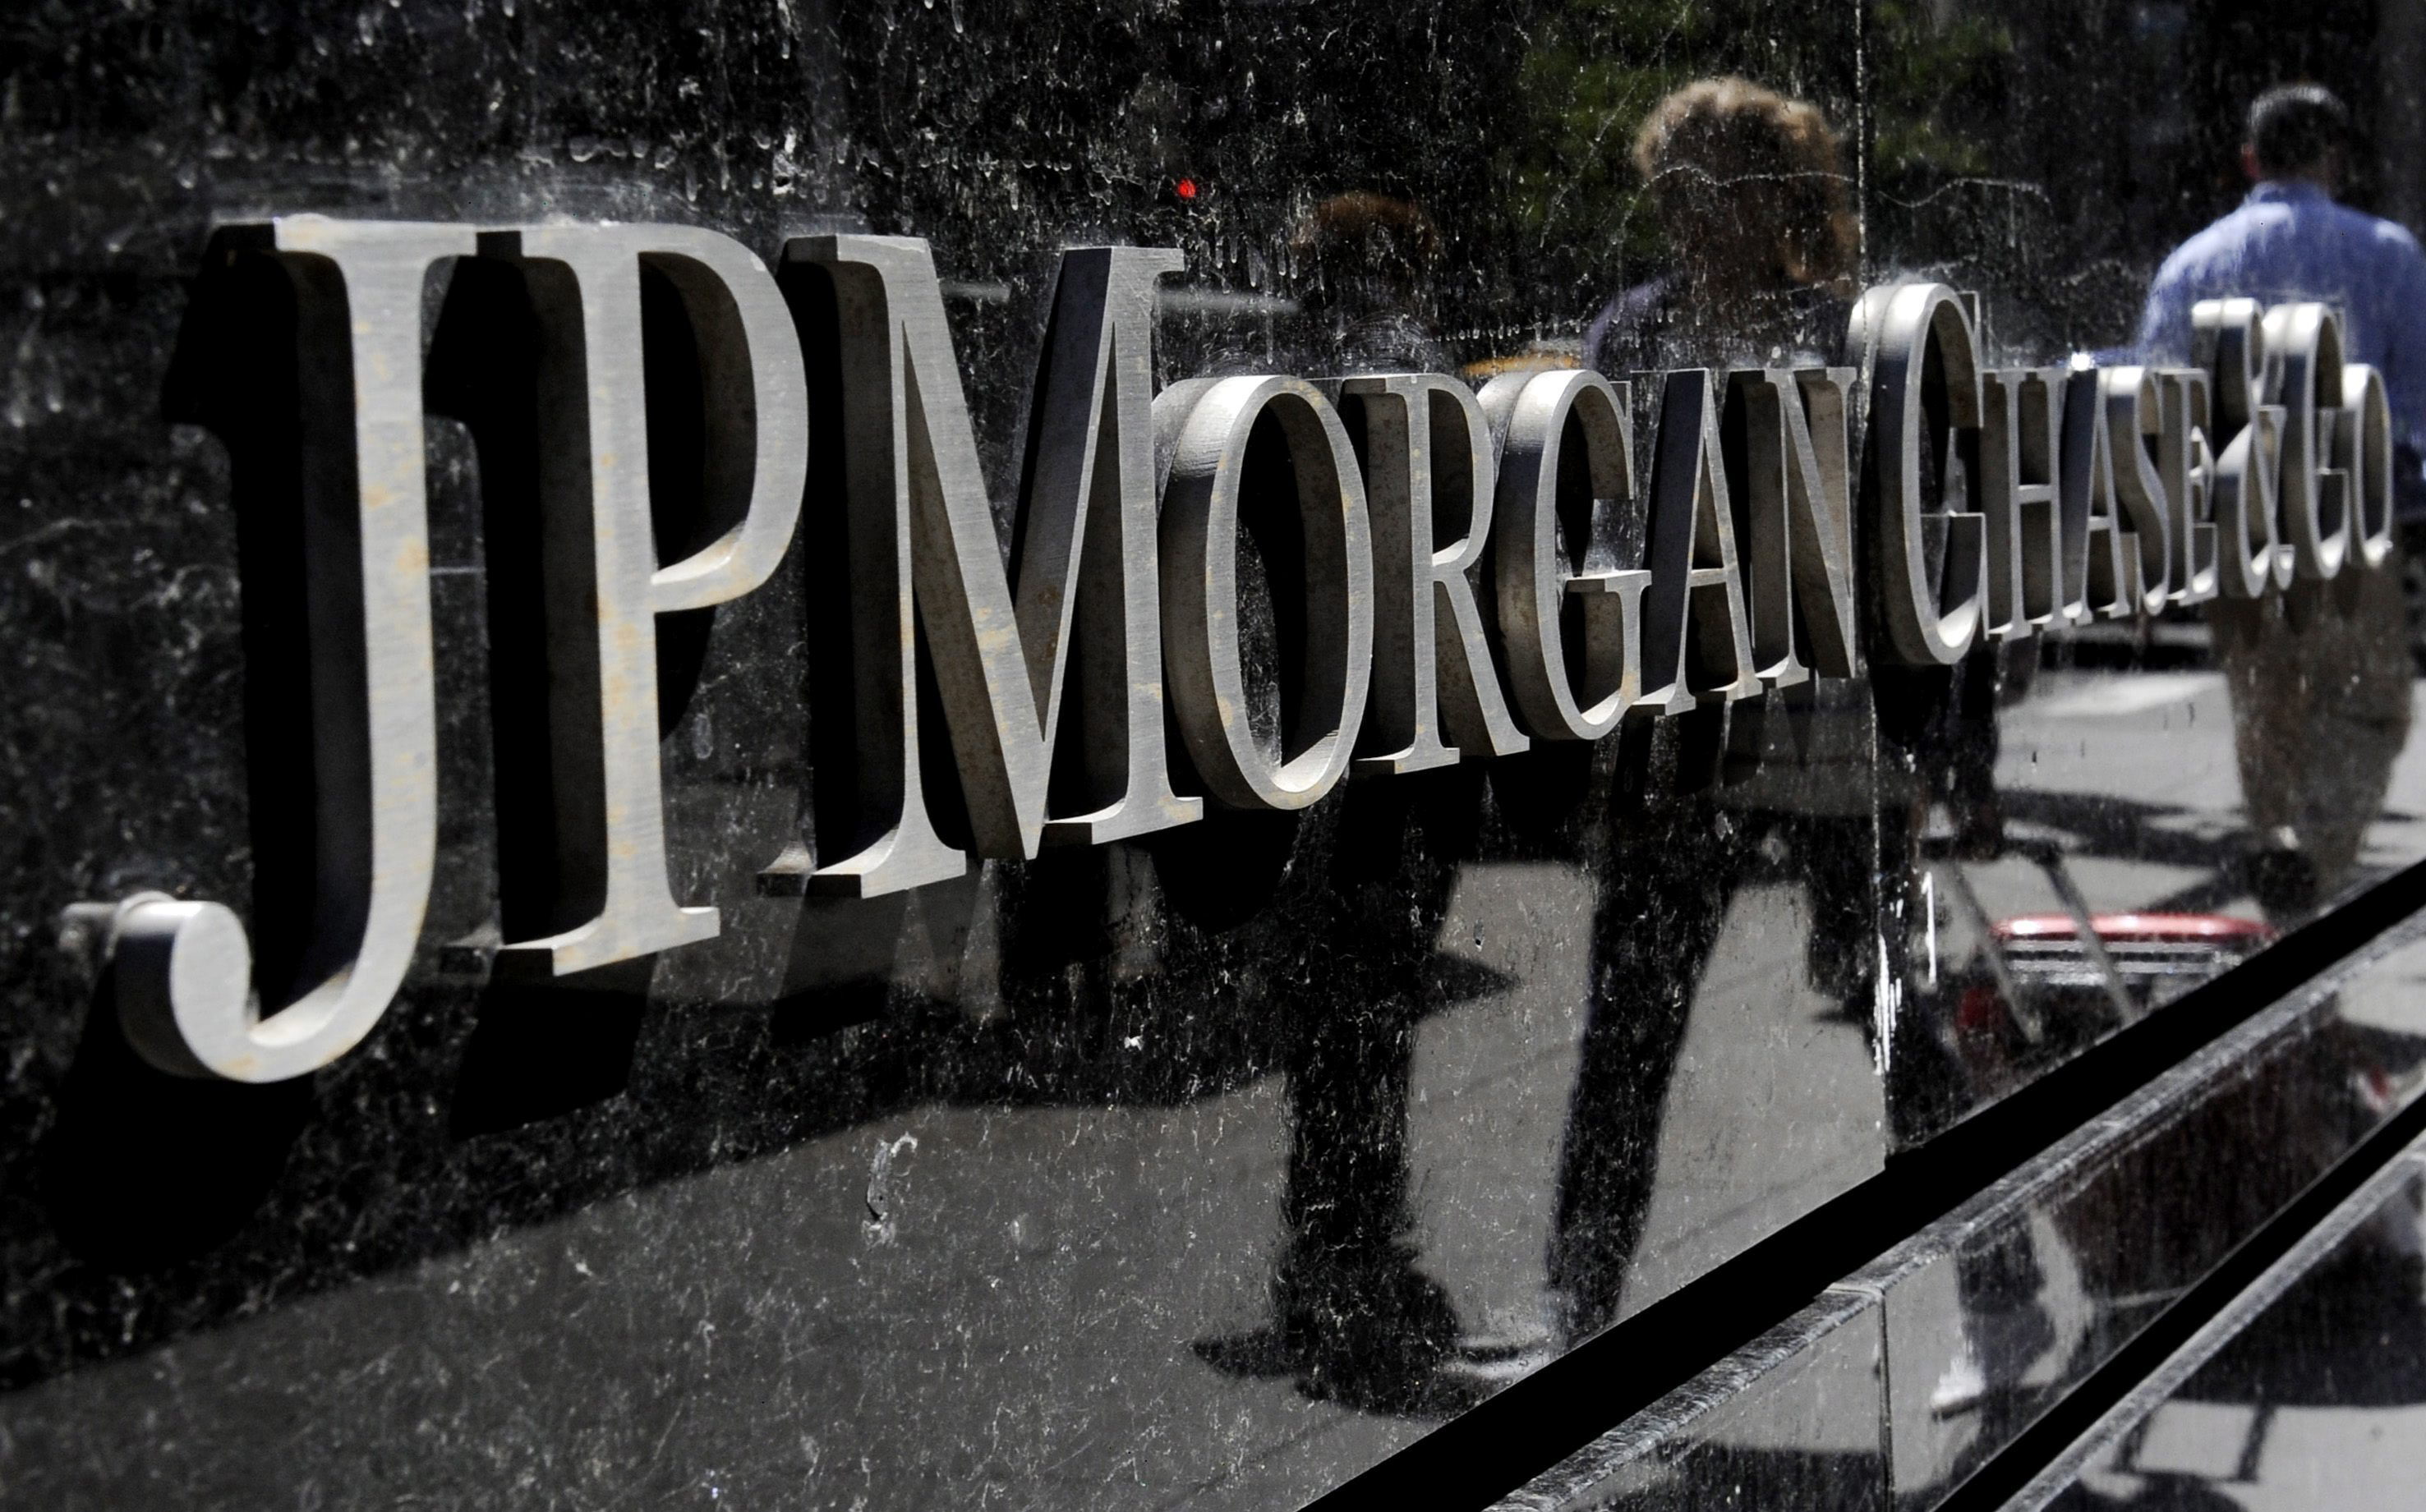 El copresidente de la división de inversiones de JPMorgan abandona el banco